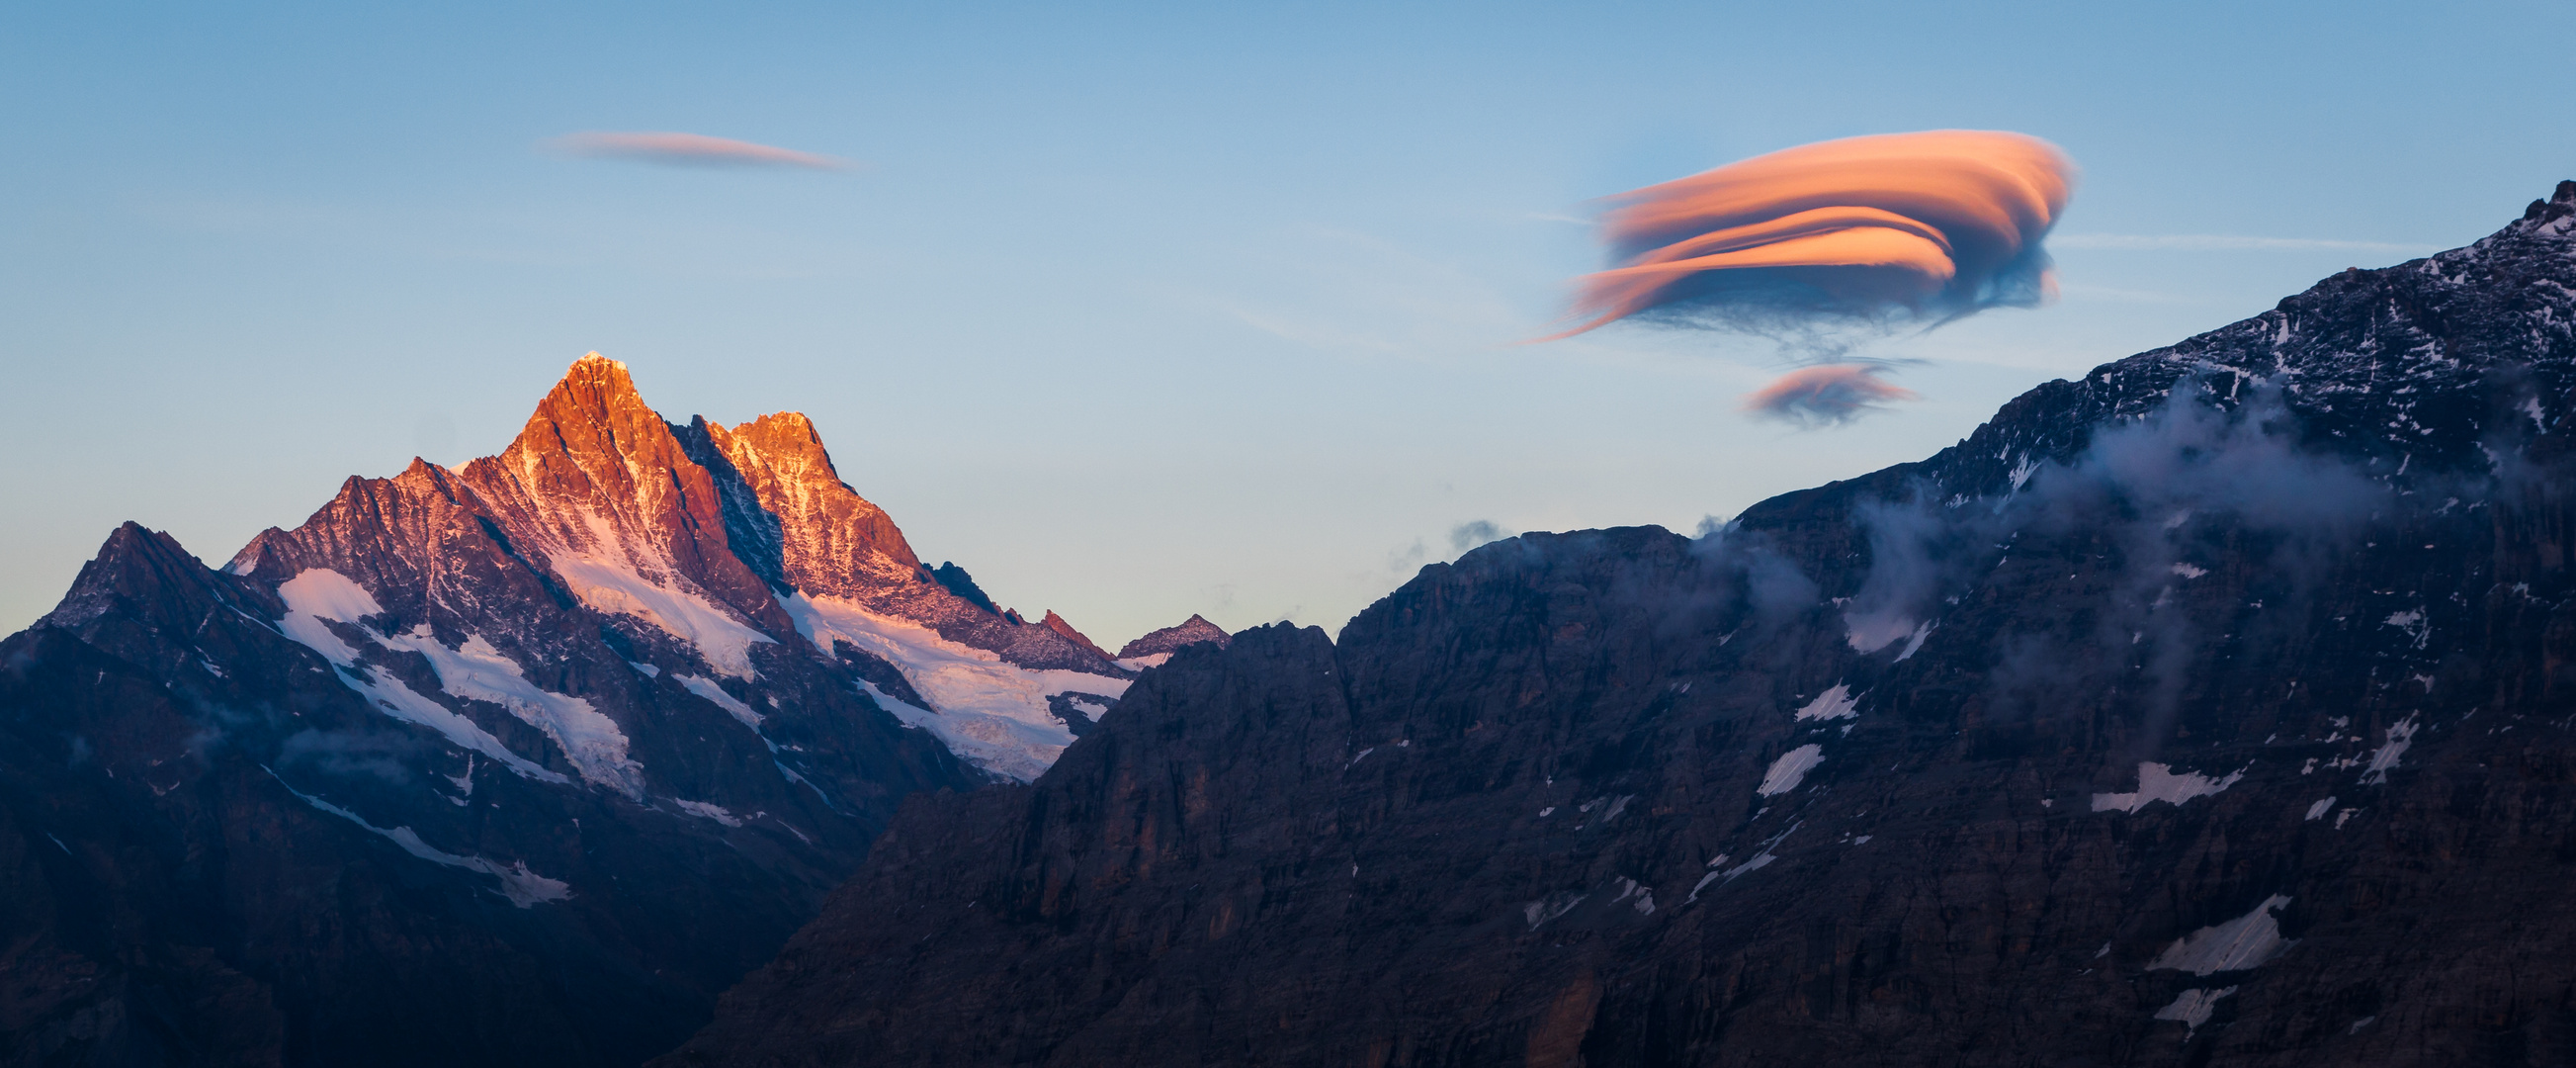 Alpenglühen und Wolkenspiel